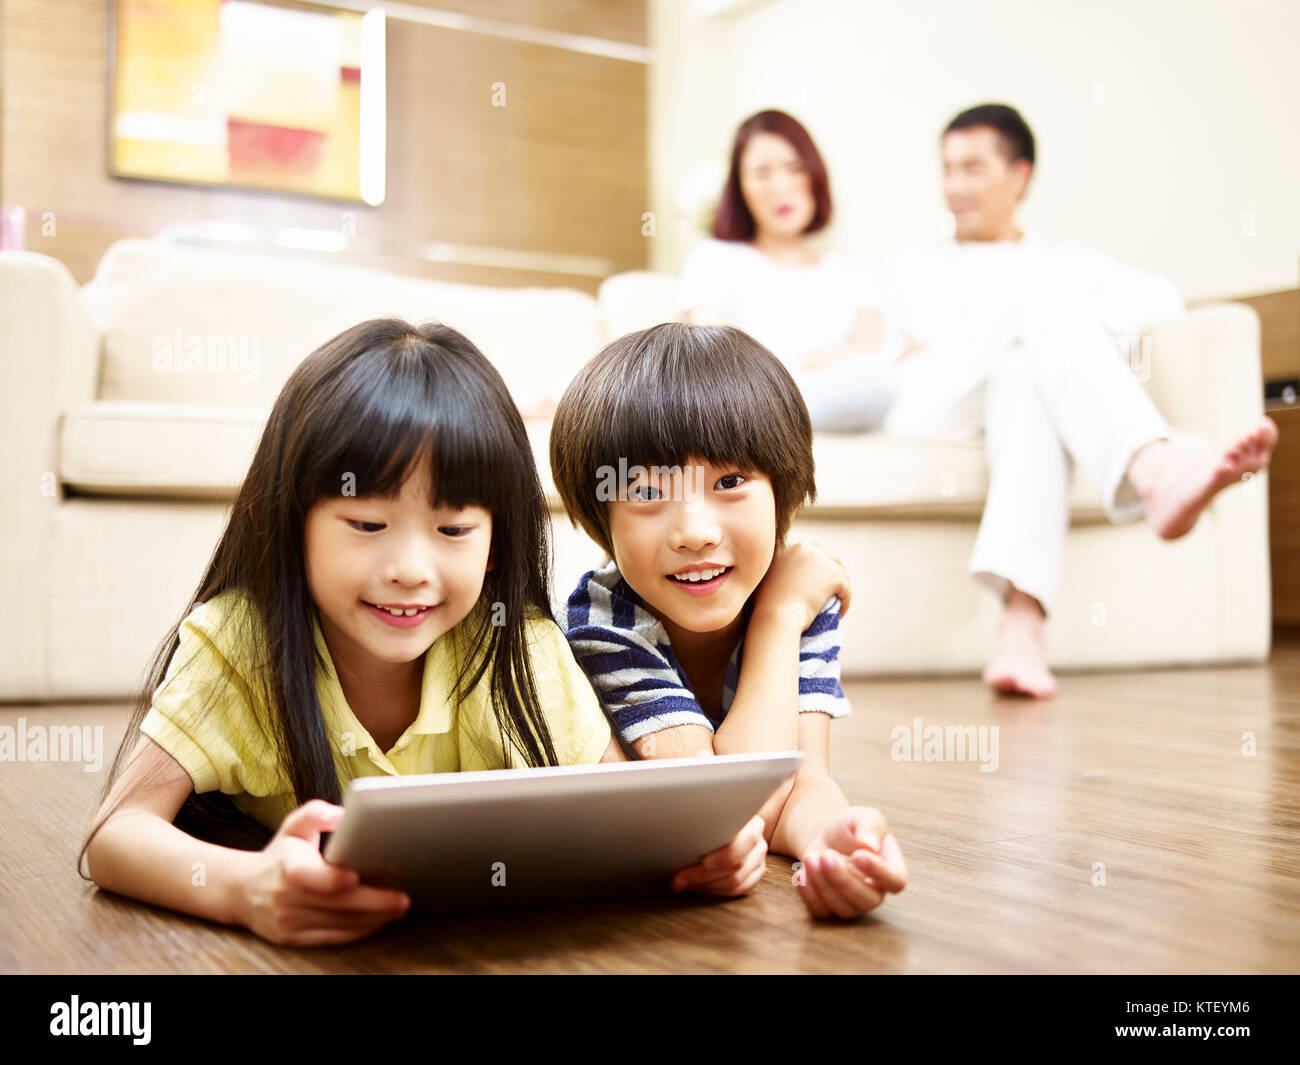 Deux enfants asiatiques lying on floor playing video game using digital tablet while parents regardant en arrière-plan. Banque D'Images